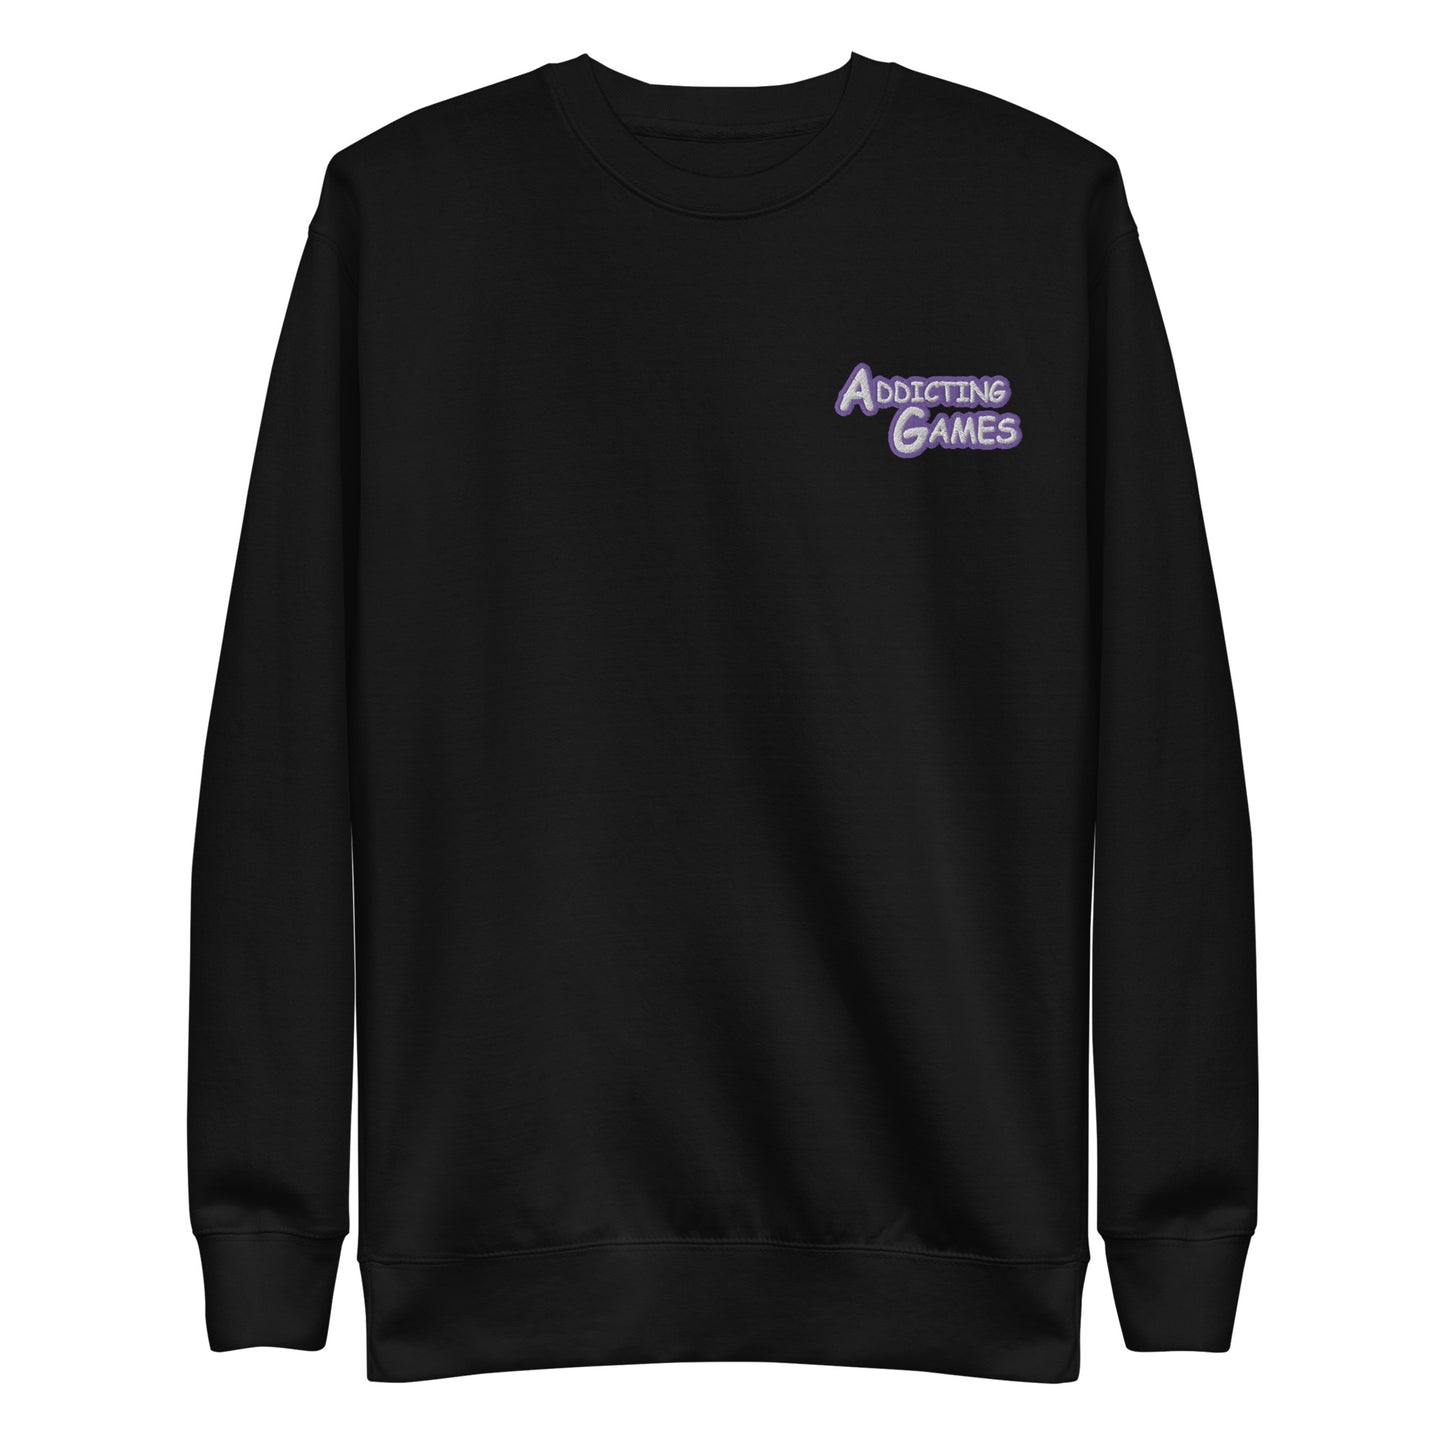 AG classic logo unisex premium sweatshirt